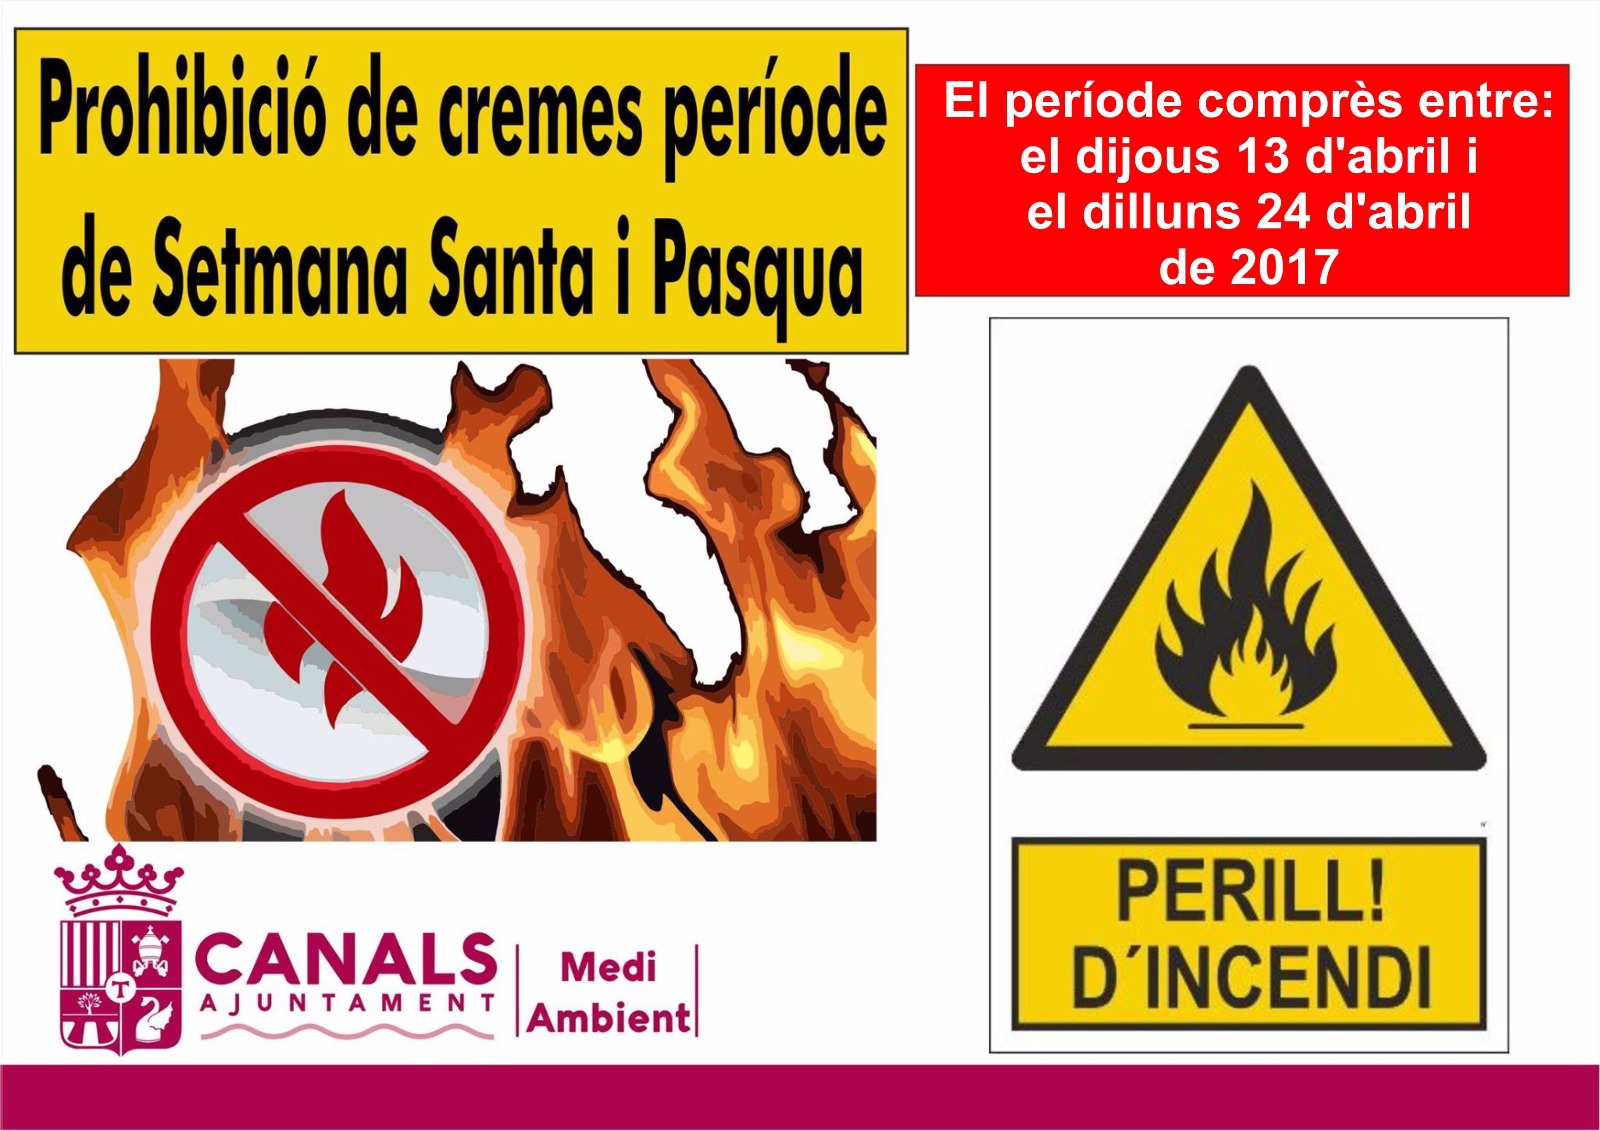 2017.04.10 Prohibició Cremes Setmana Santa. Ajuntament de Canals.